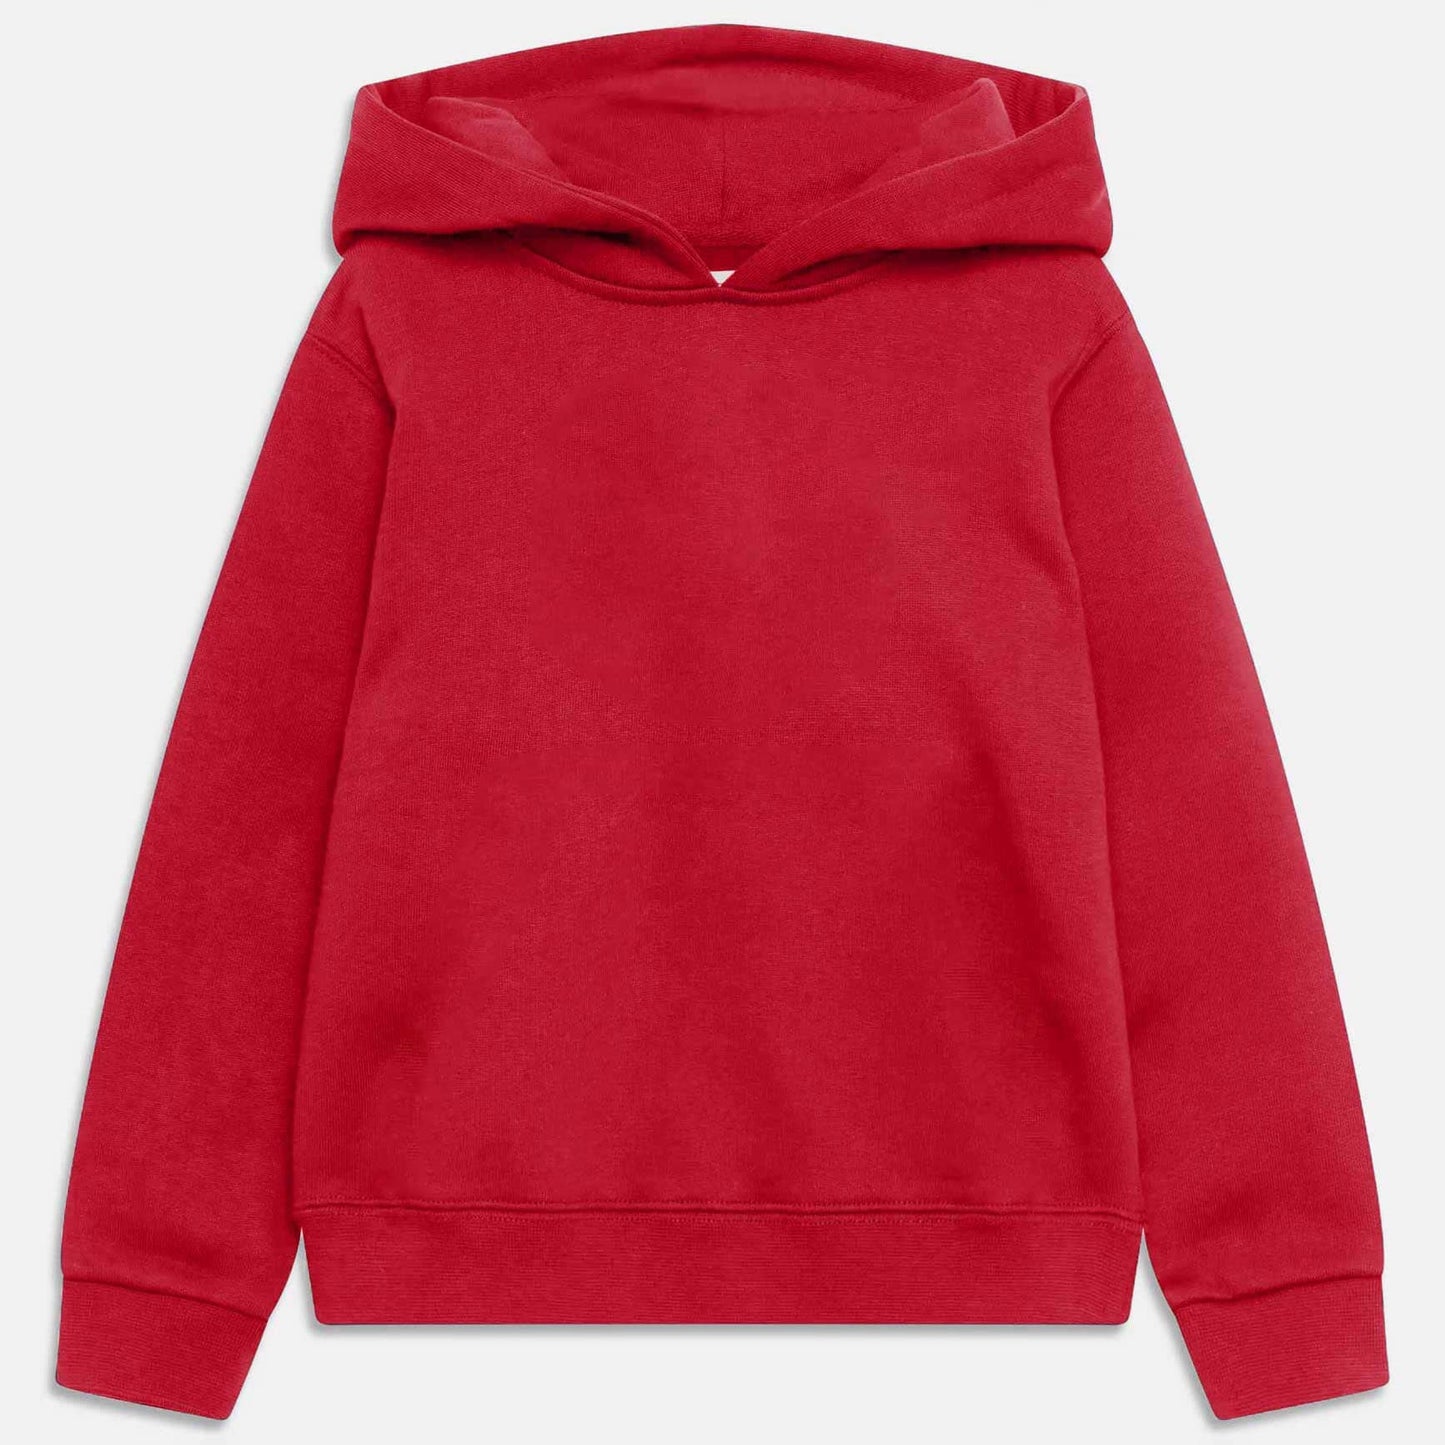 Rabbit Skins Kid's Solid Design Fleece Pullover Hoodie Boy's Pullover Hoodie Minhas Garments Red 2 Years 